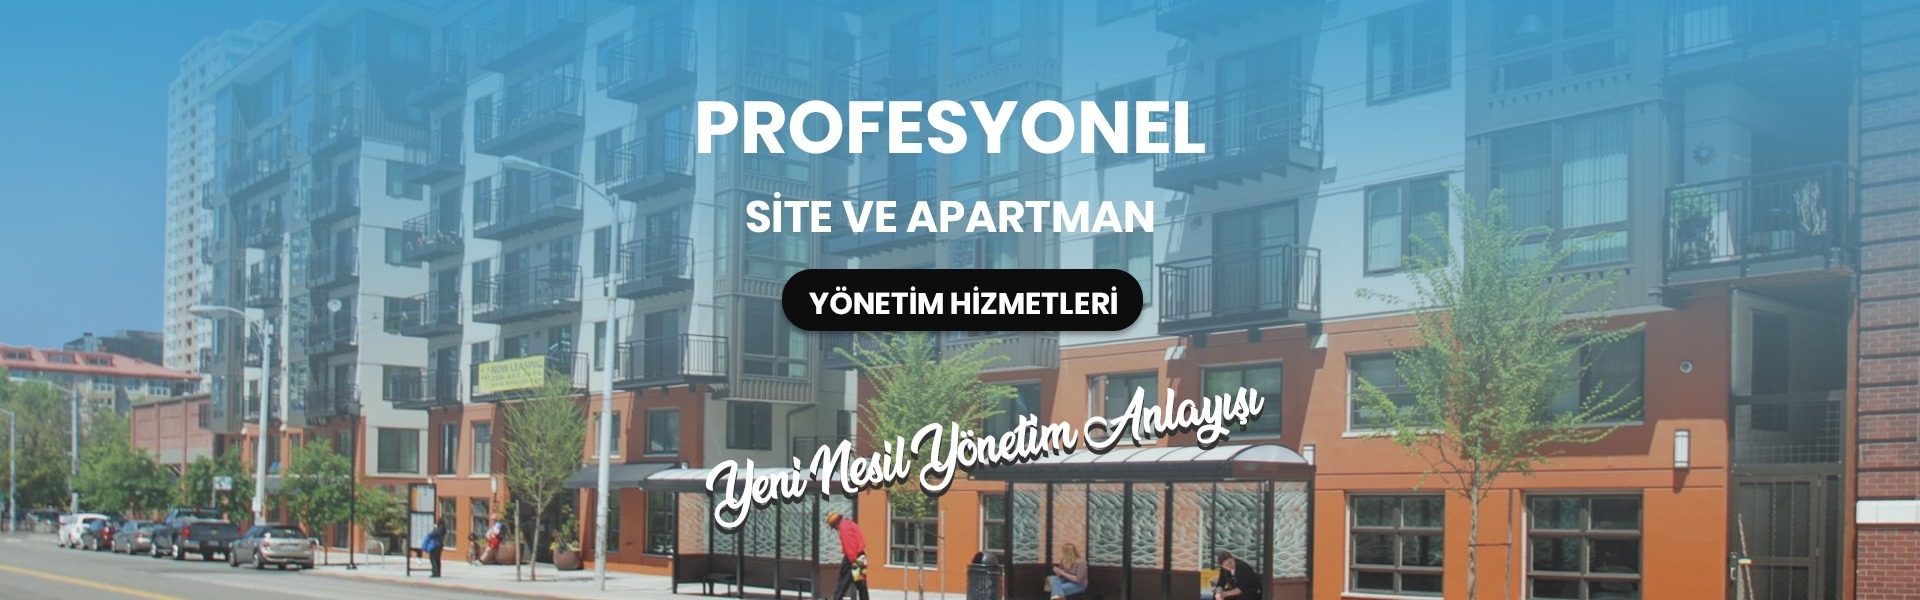 İzmir Site Yönetim Hizmetleri